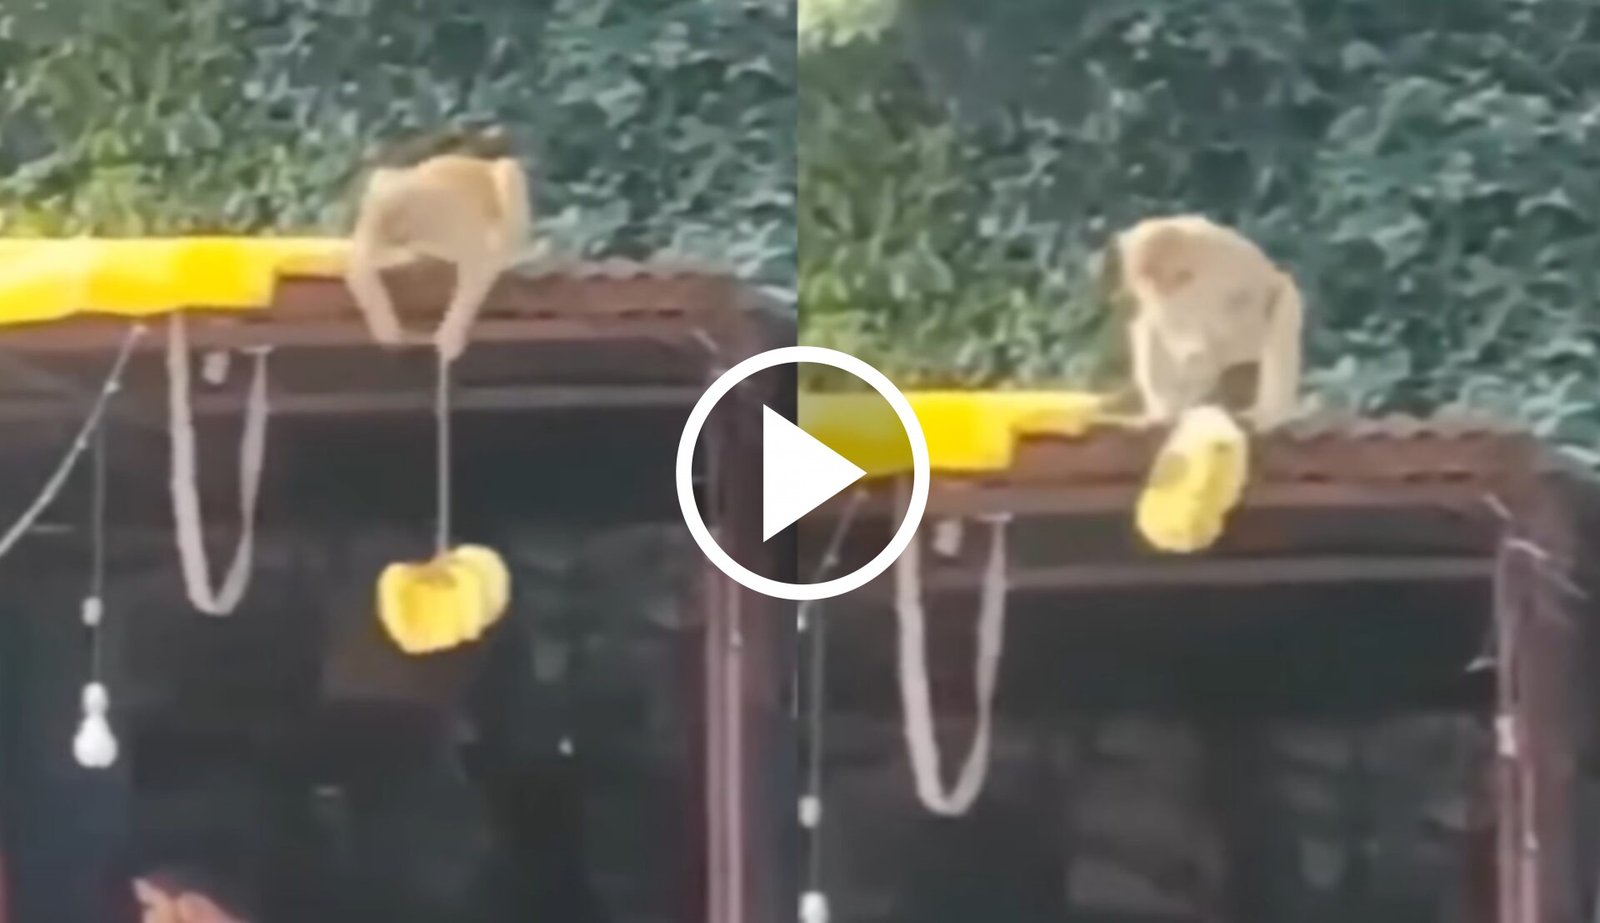 Bandar Ka Video: चालक बंदर ने चालाकी से दुकानदार को दिया चकमा, उड़ा लिया केले का गुच्छा, देखे Video...